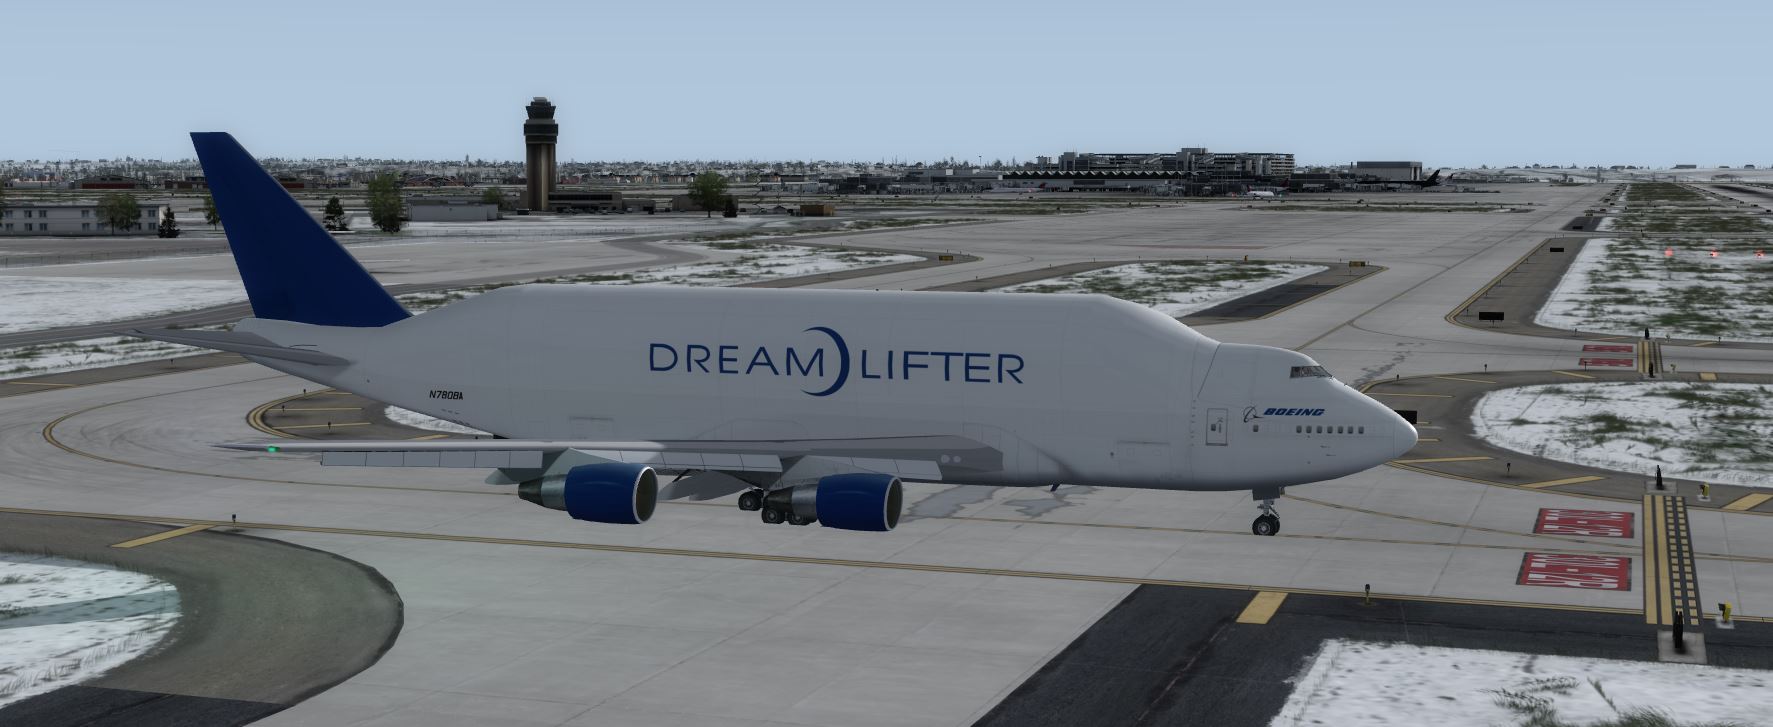 Boeing 747-400LCF DreamLifter @ KMSP-7412 